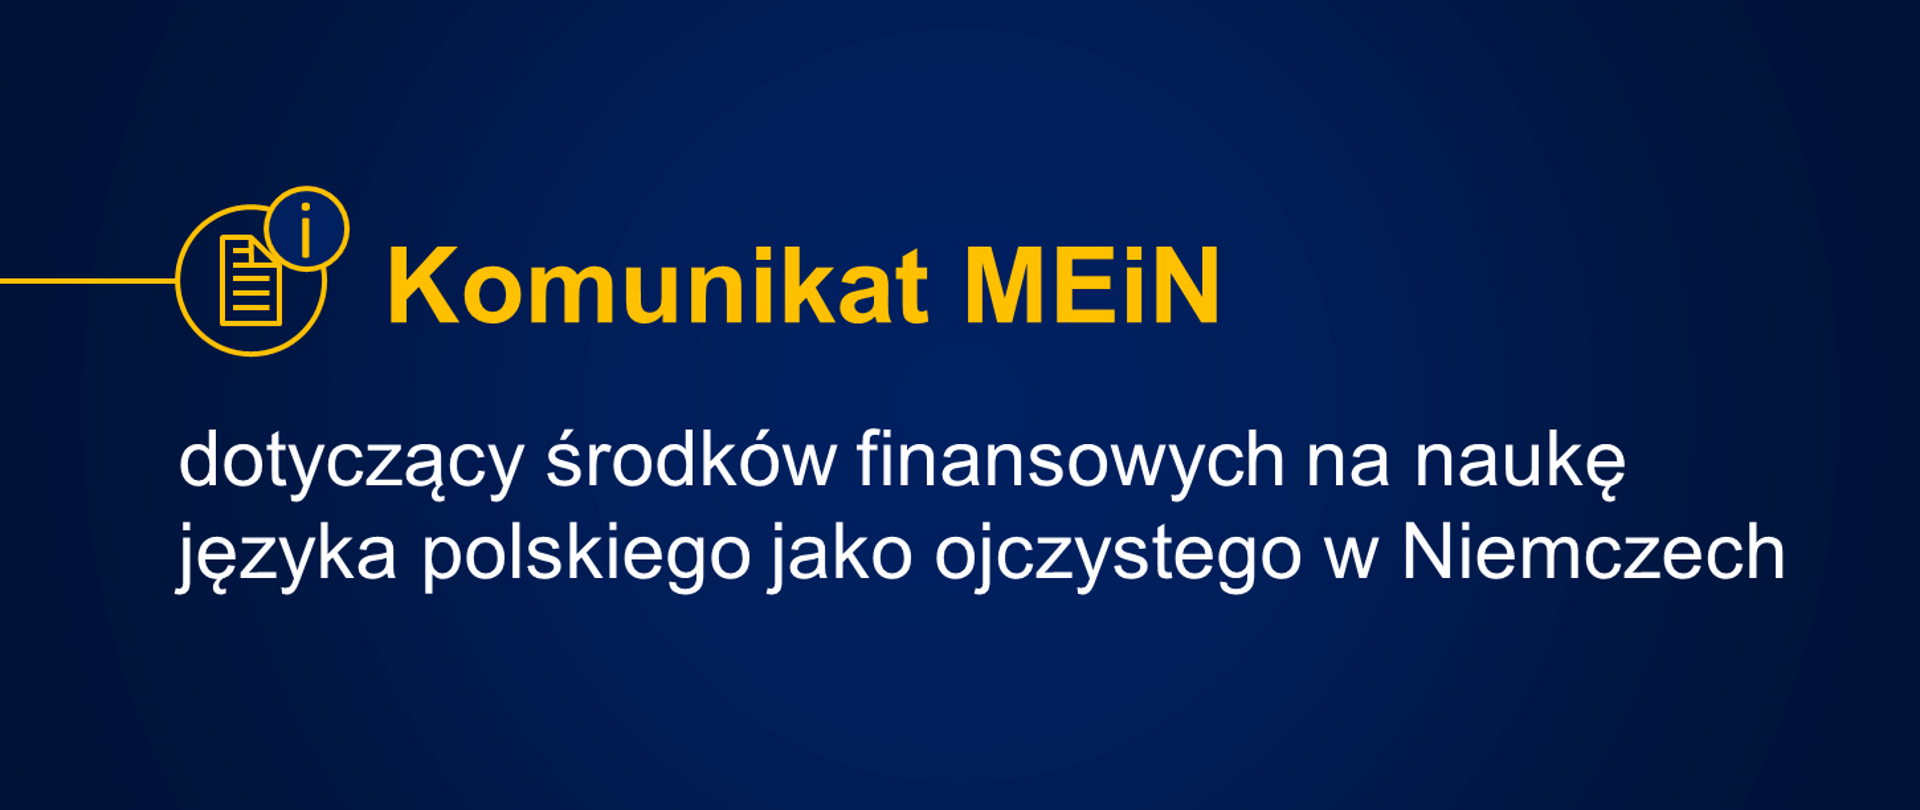 Grafika z tekstem: "Komunikat MEiN dotyczący środków finansowych na naukę języka polskiego jako ojczystego w Niemczech"